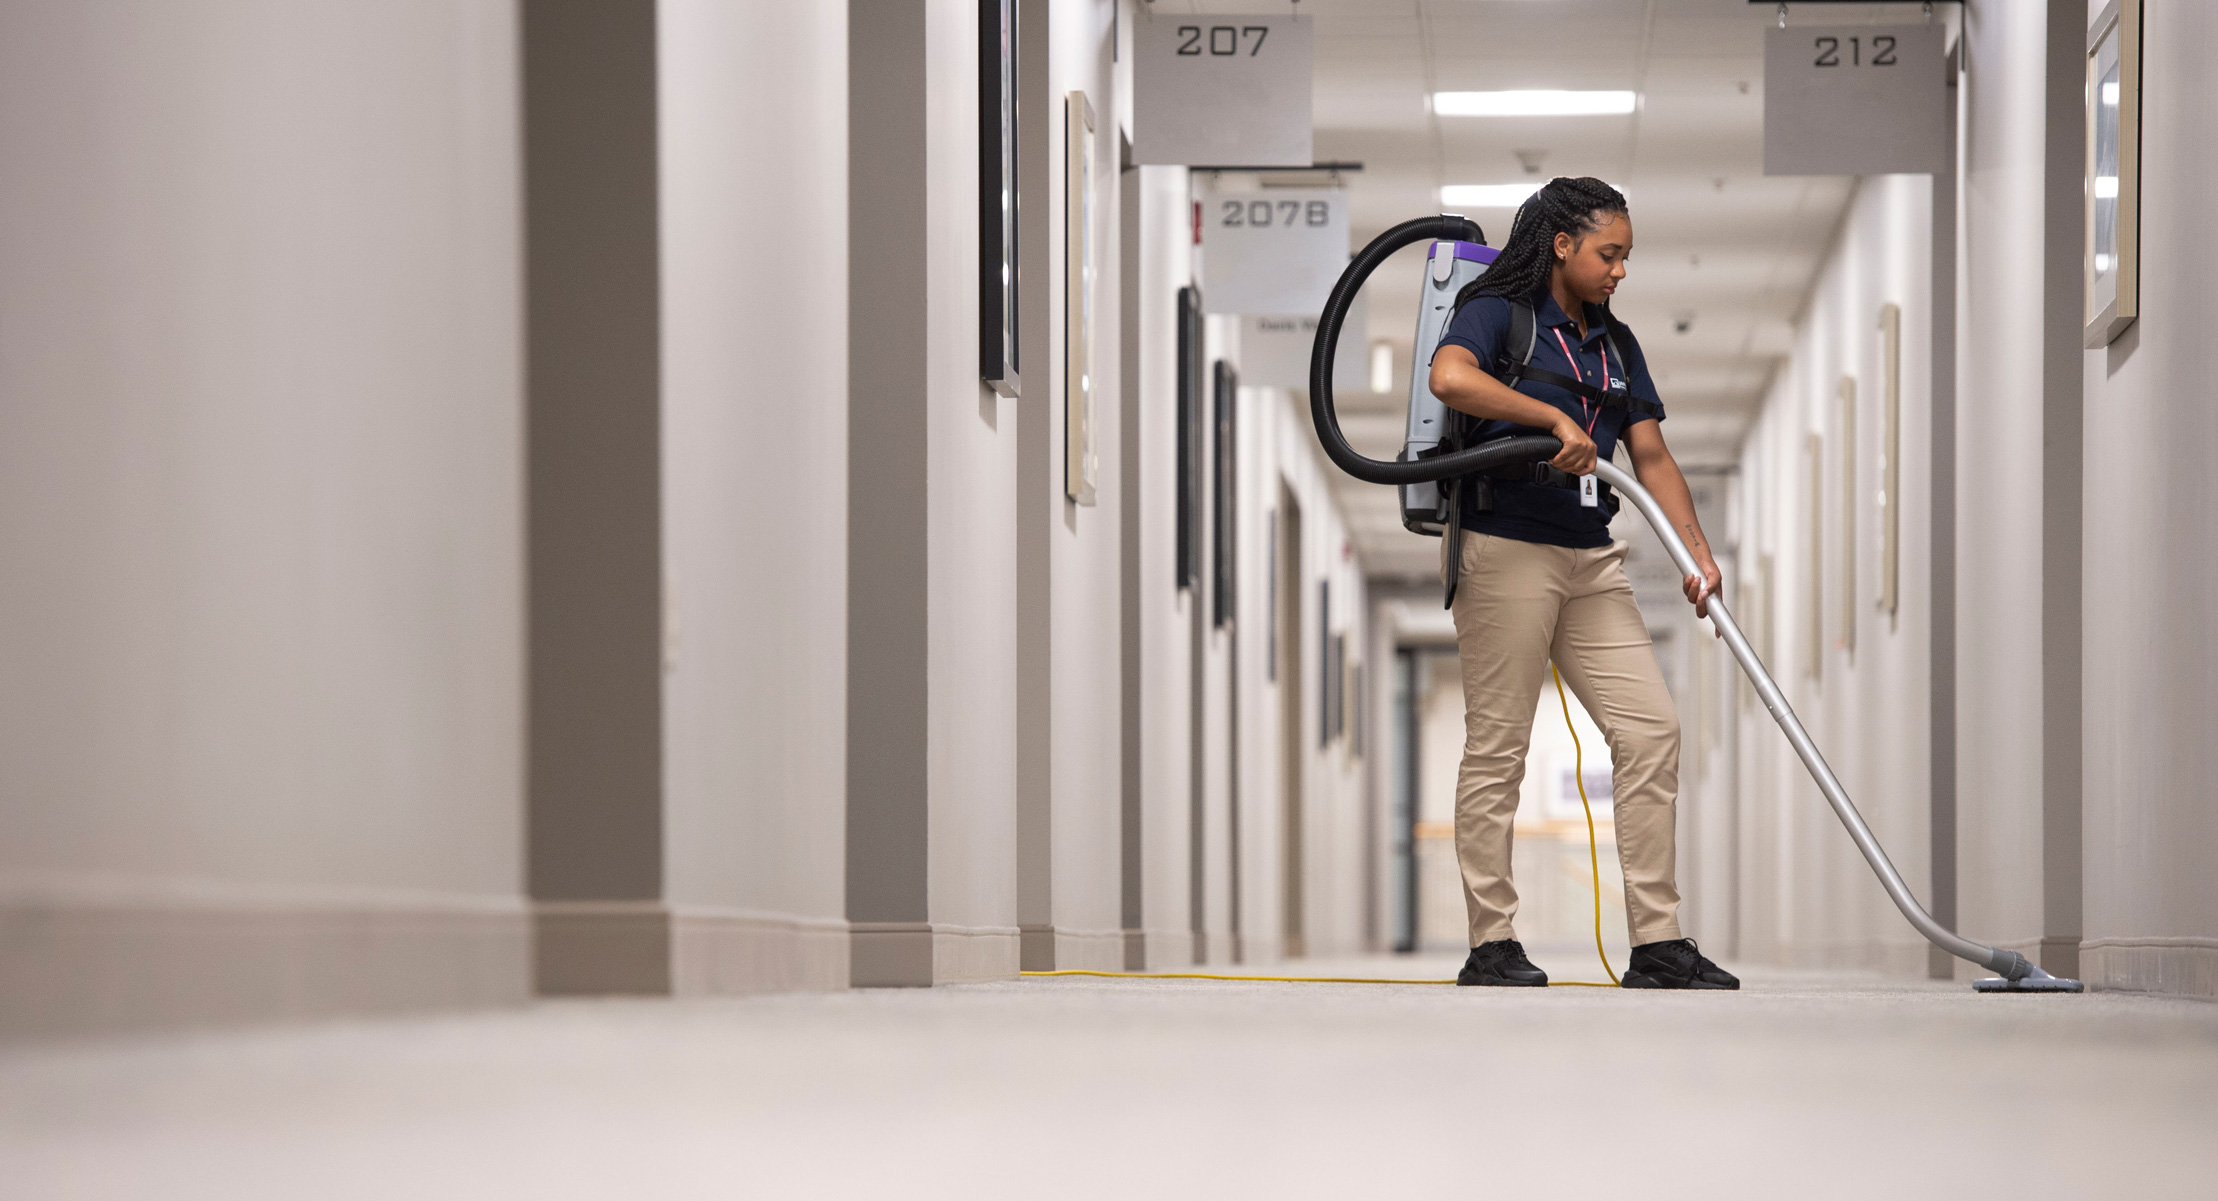 Employee vacuuming floor in hallway